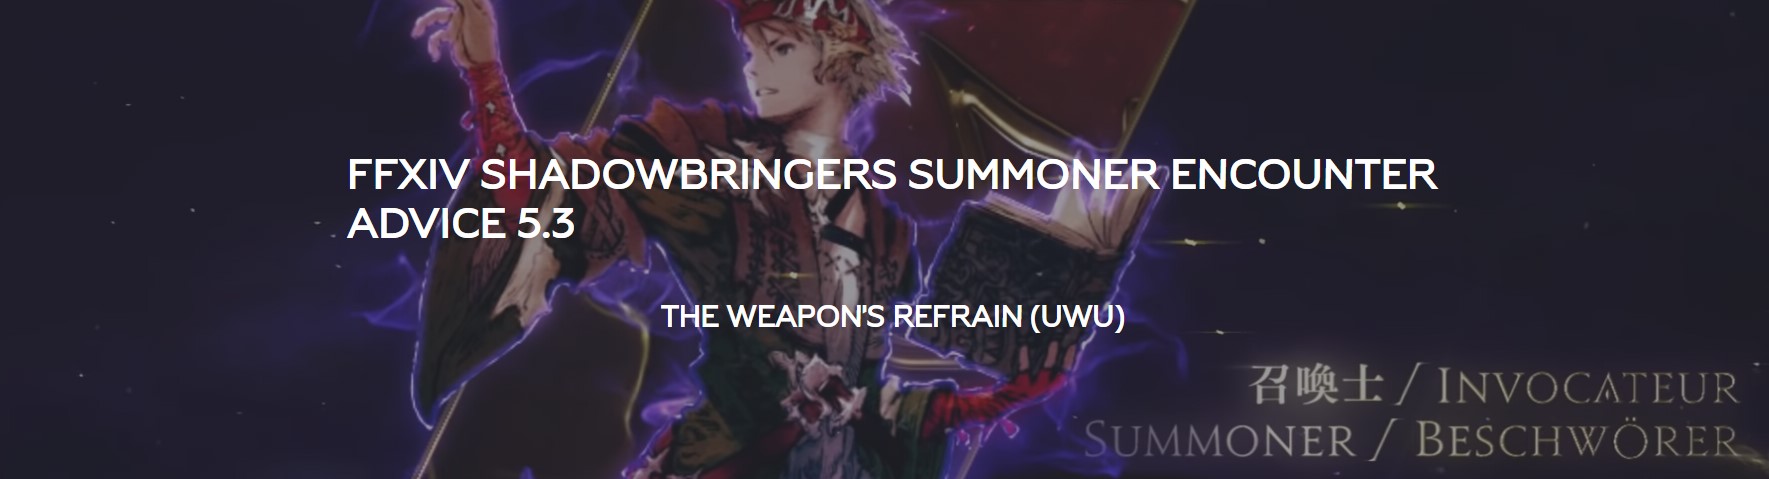 The Weapon's Refrain (UWU) Summoner Guide